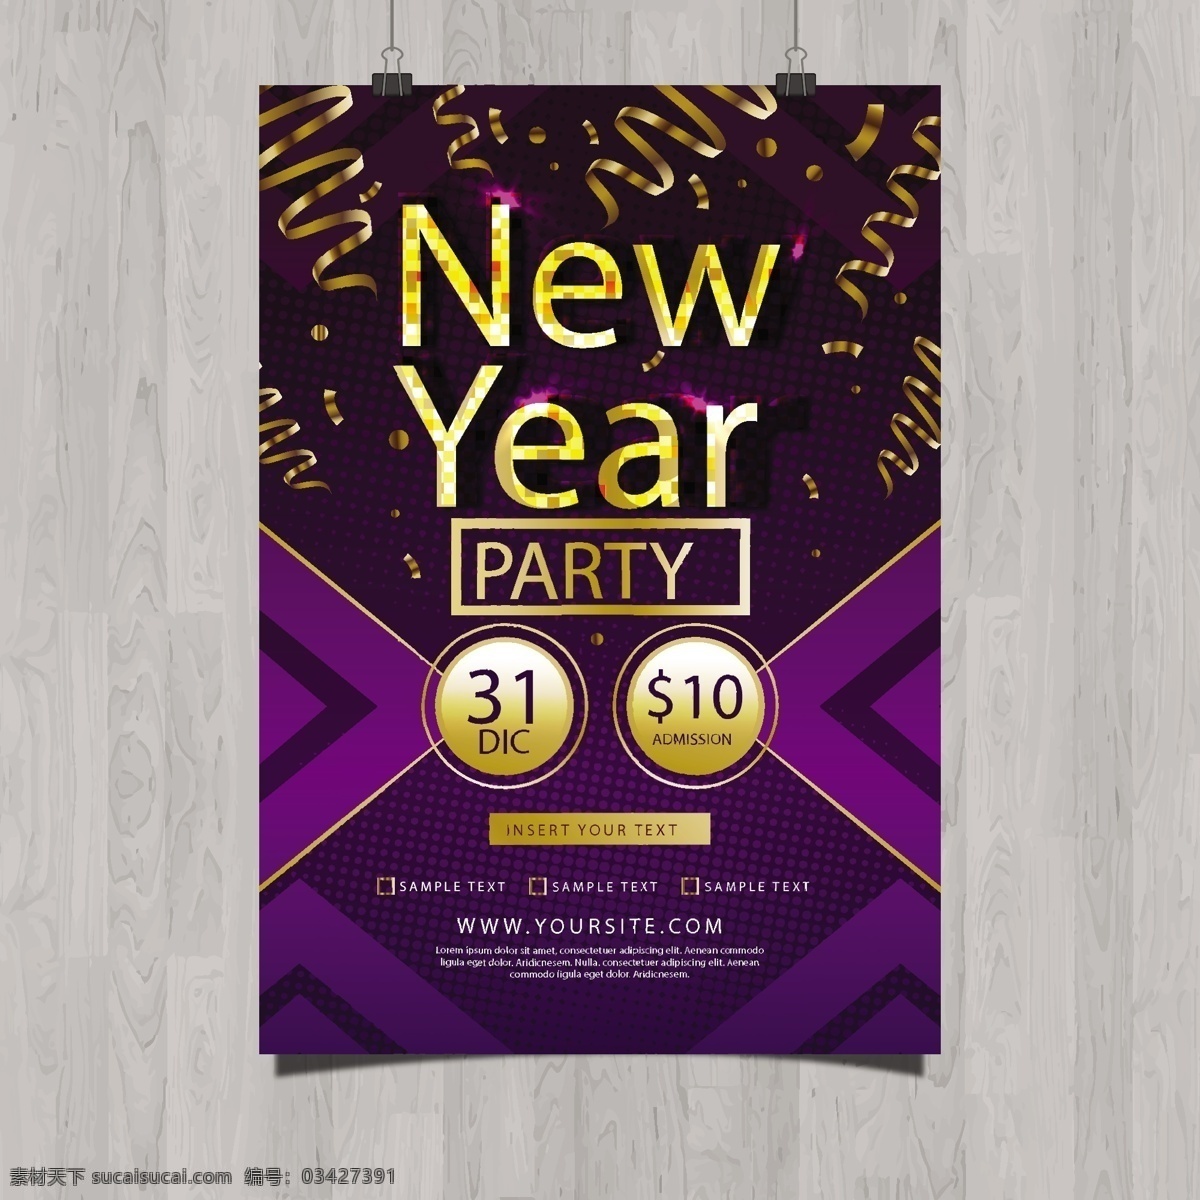 金色 紫色 新年 派对 海报 金色文字 新年海报 新年派对海报 紫色背景